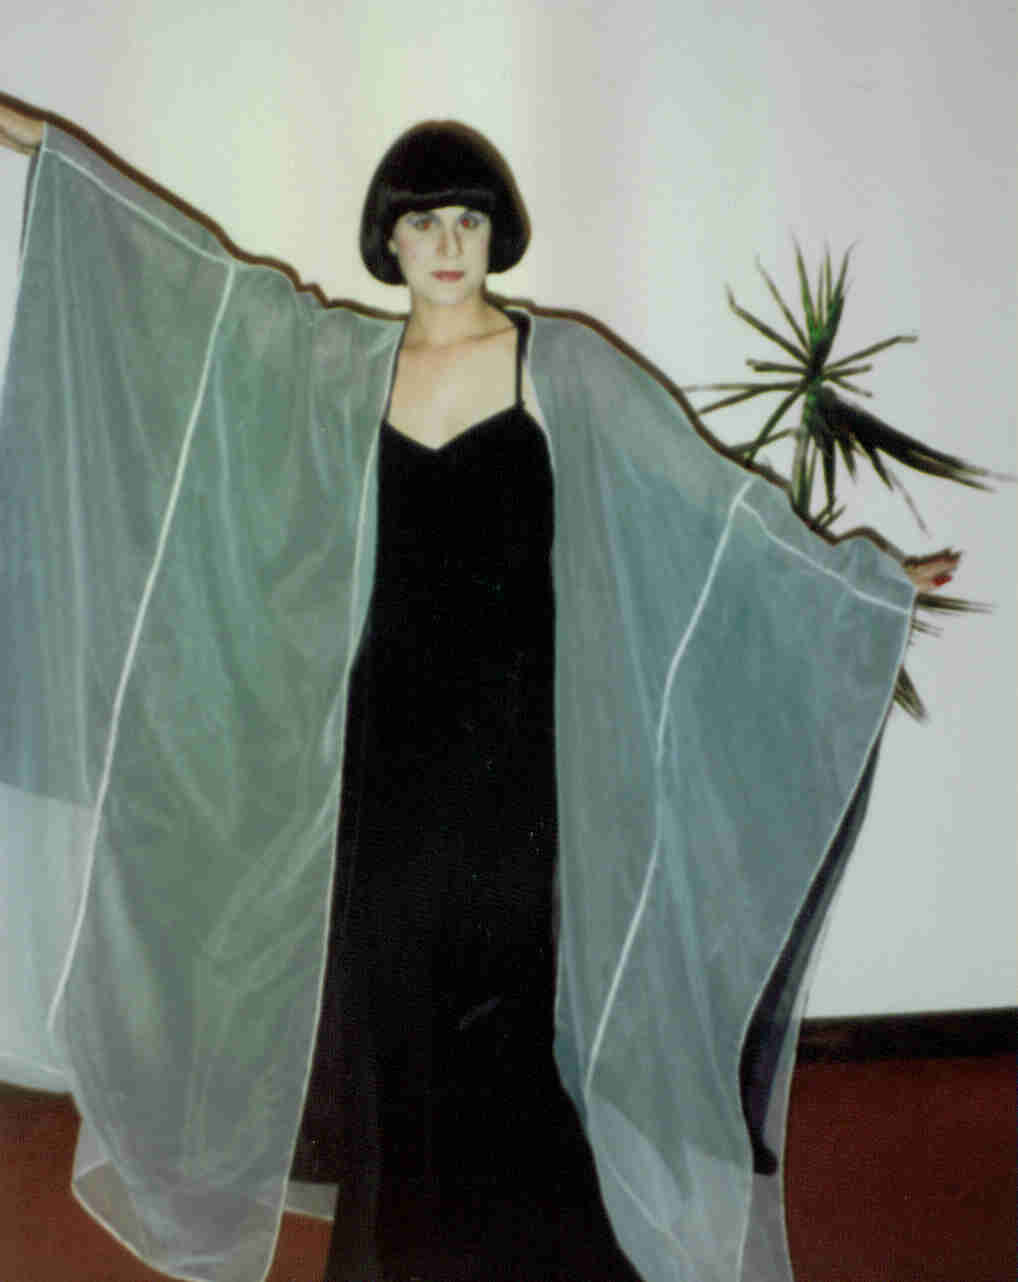 Amanda Lupis, "Thin Ice", National Arts Center 1988